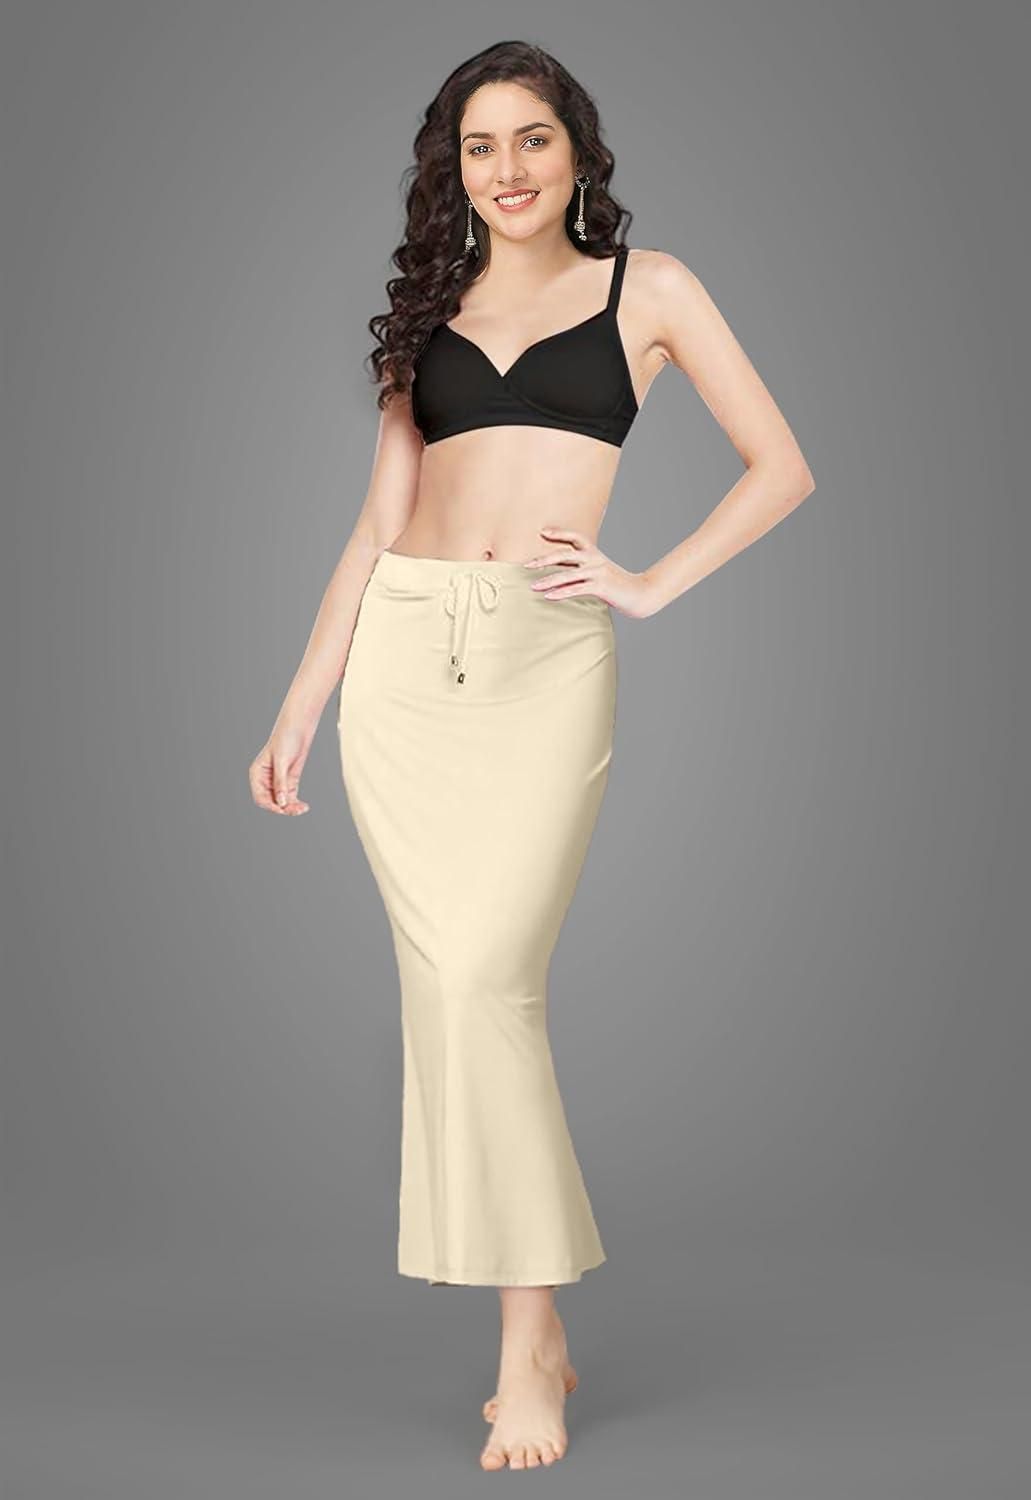 Mehrang Microfiber Saree Shapewear Petticoat for Women at Rs 399